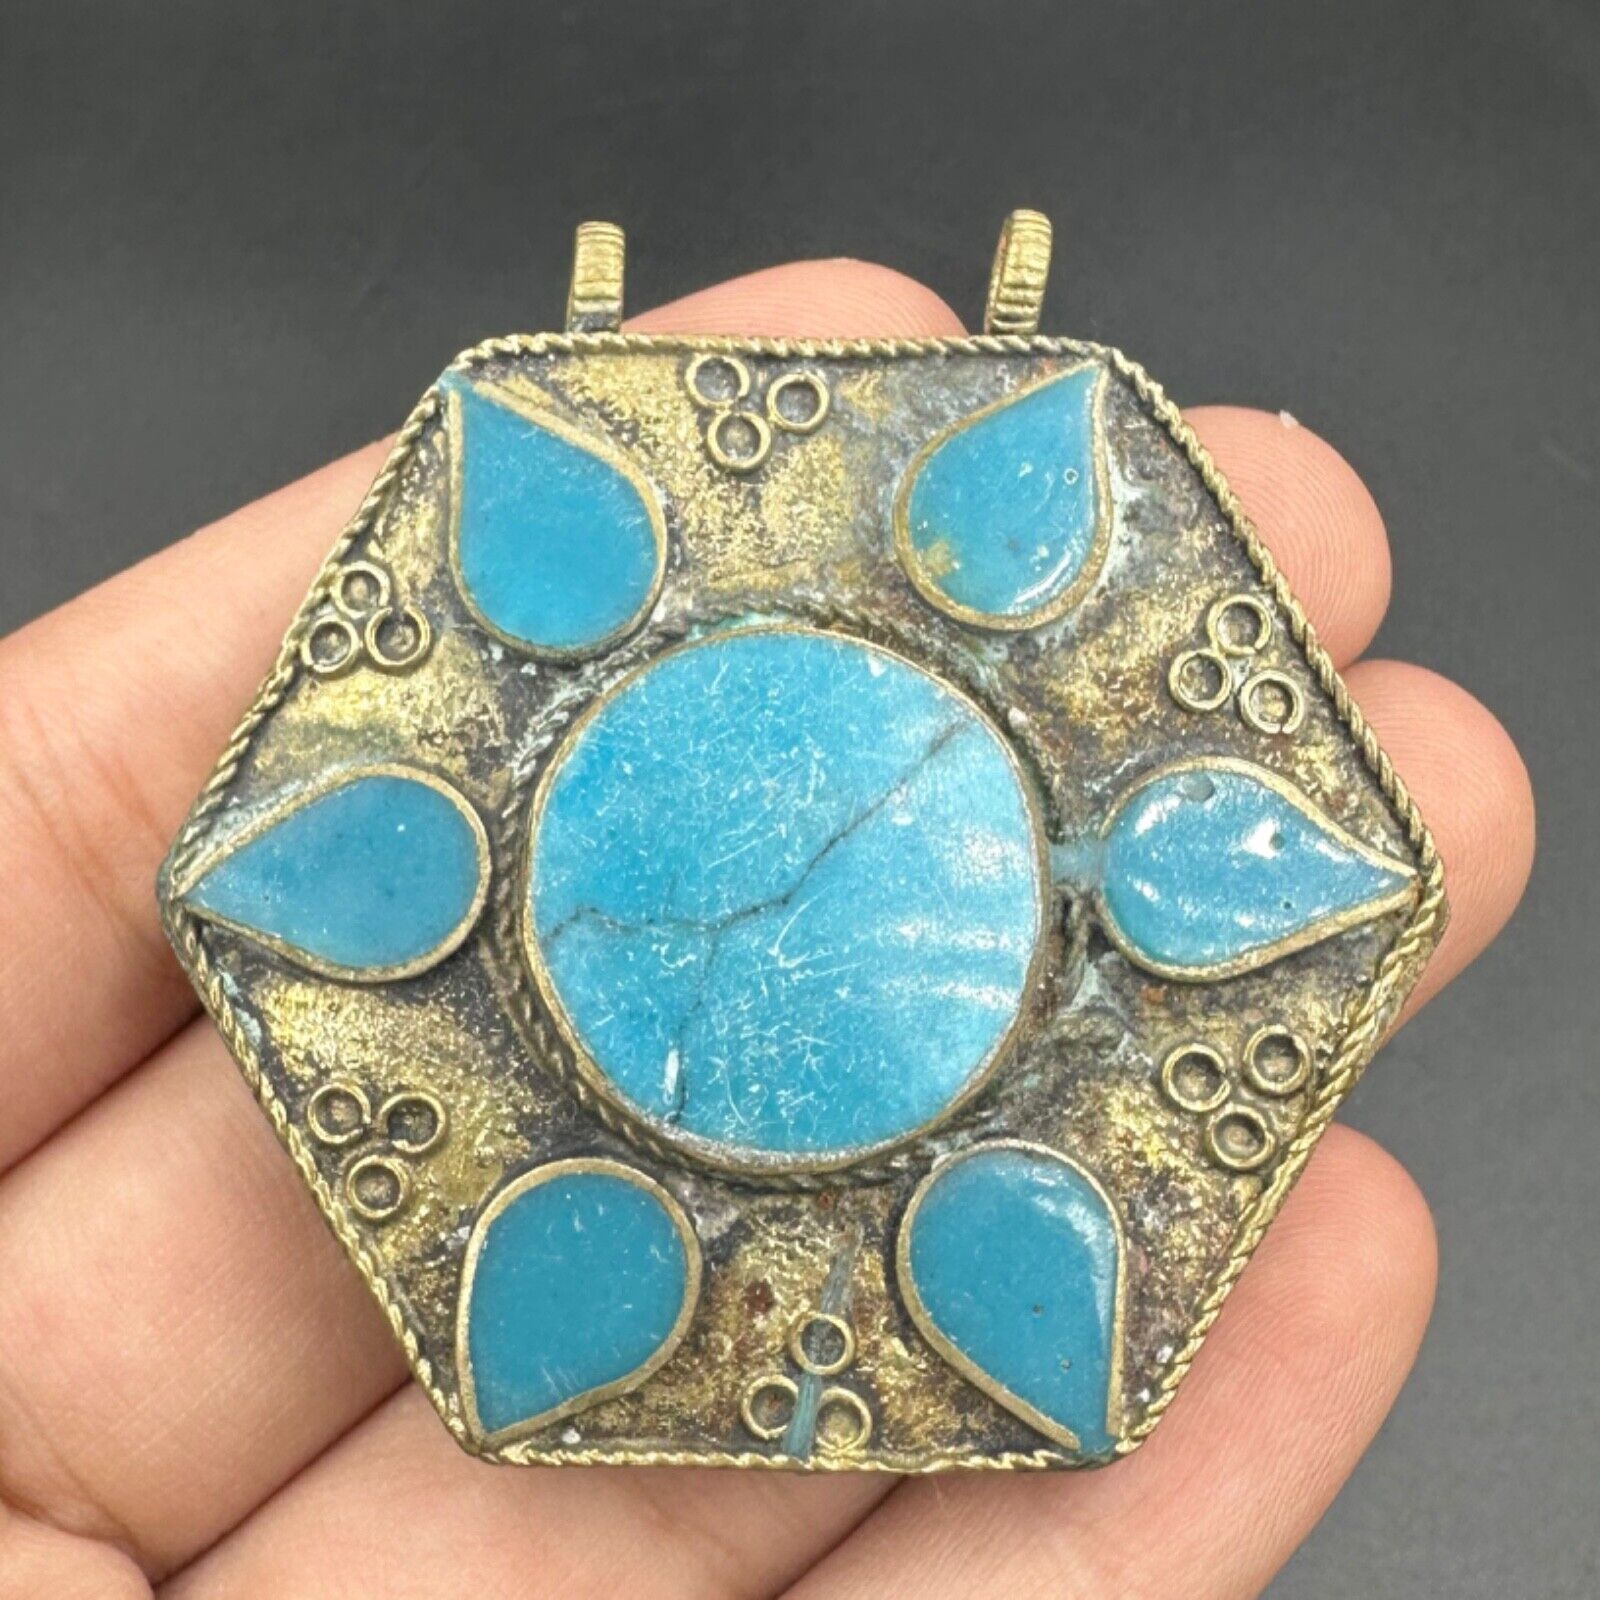 Wonderful rare unique ancient Roman torquise pendant